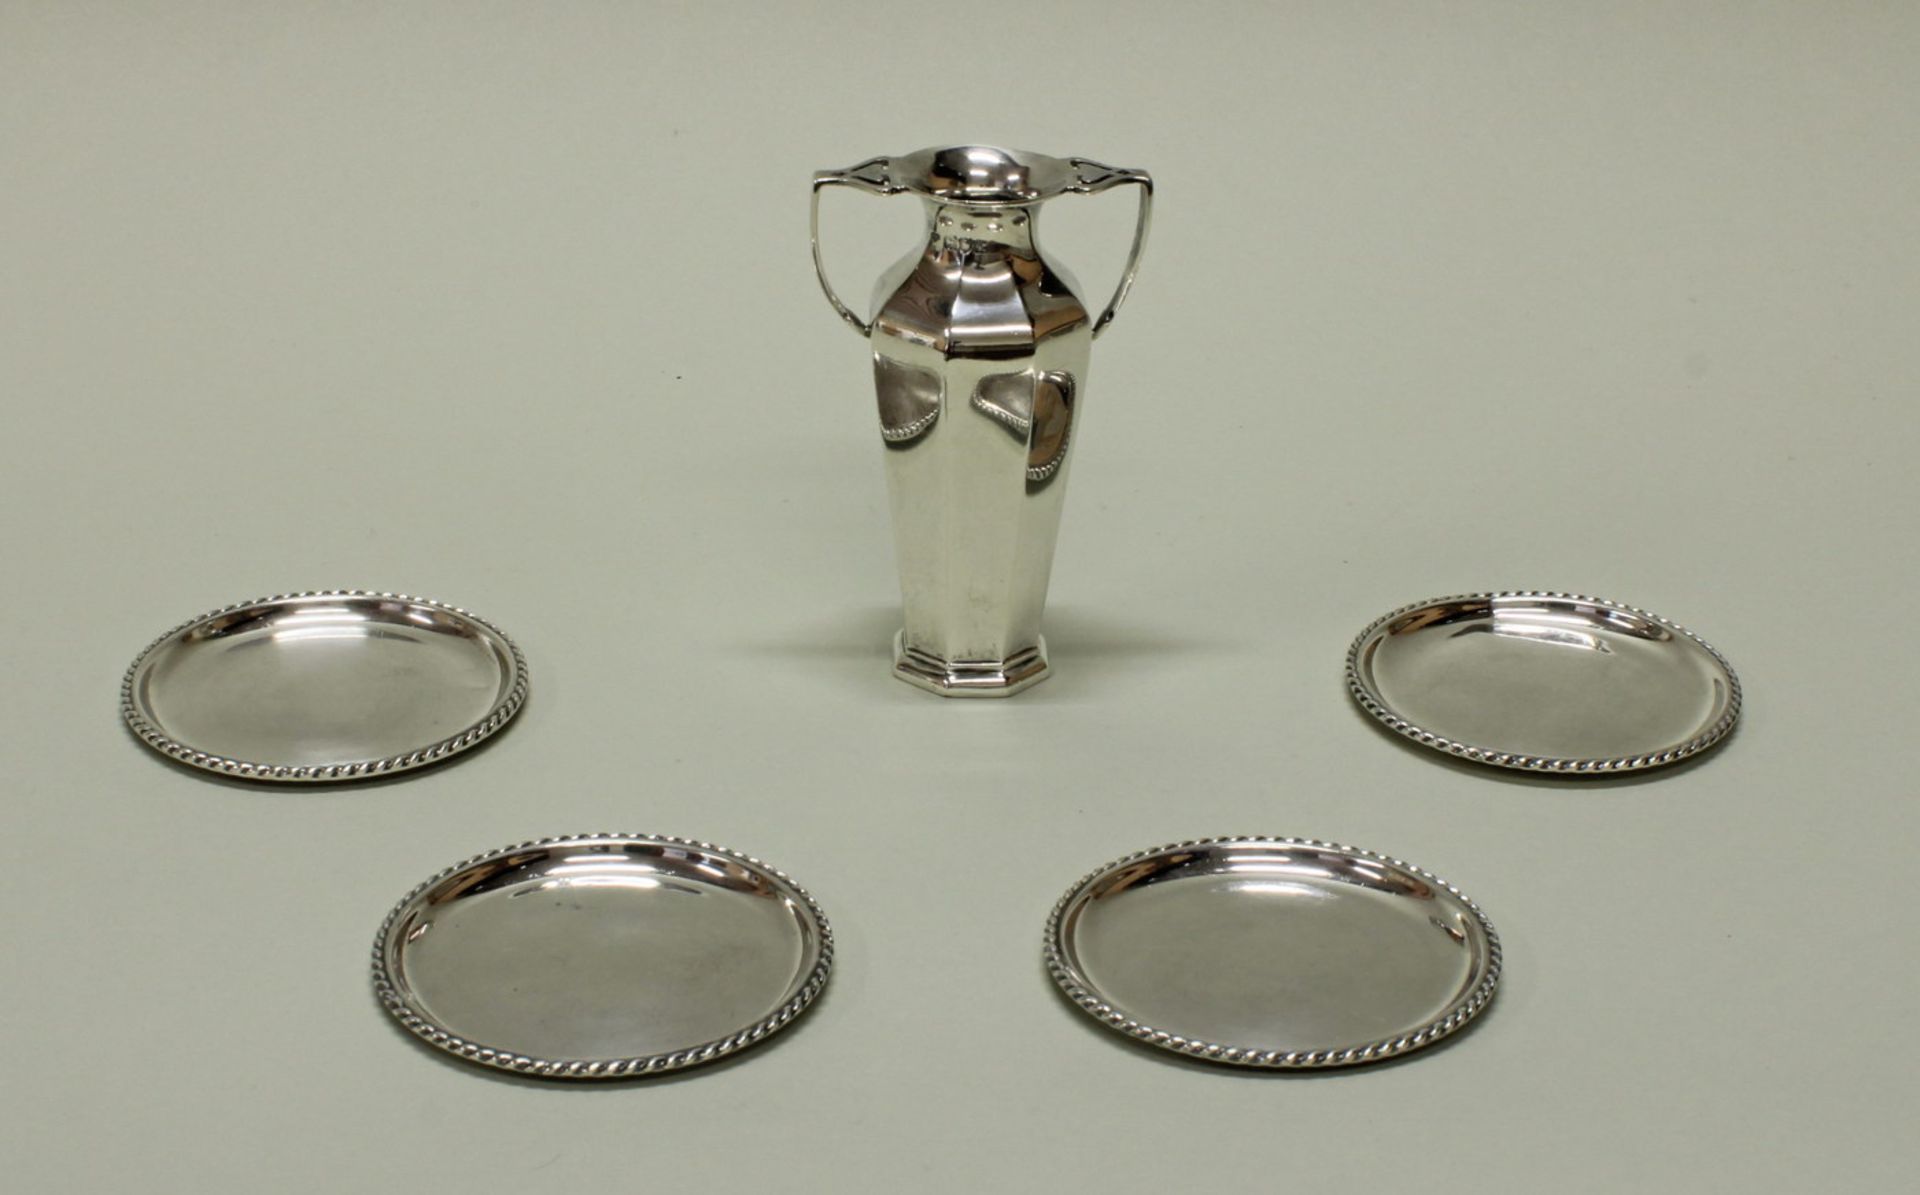 Tischvase, Silber 925, London, 1905, Goldsmiths & Silversmiths Company, oktogonal, zwei Handhaben,